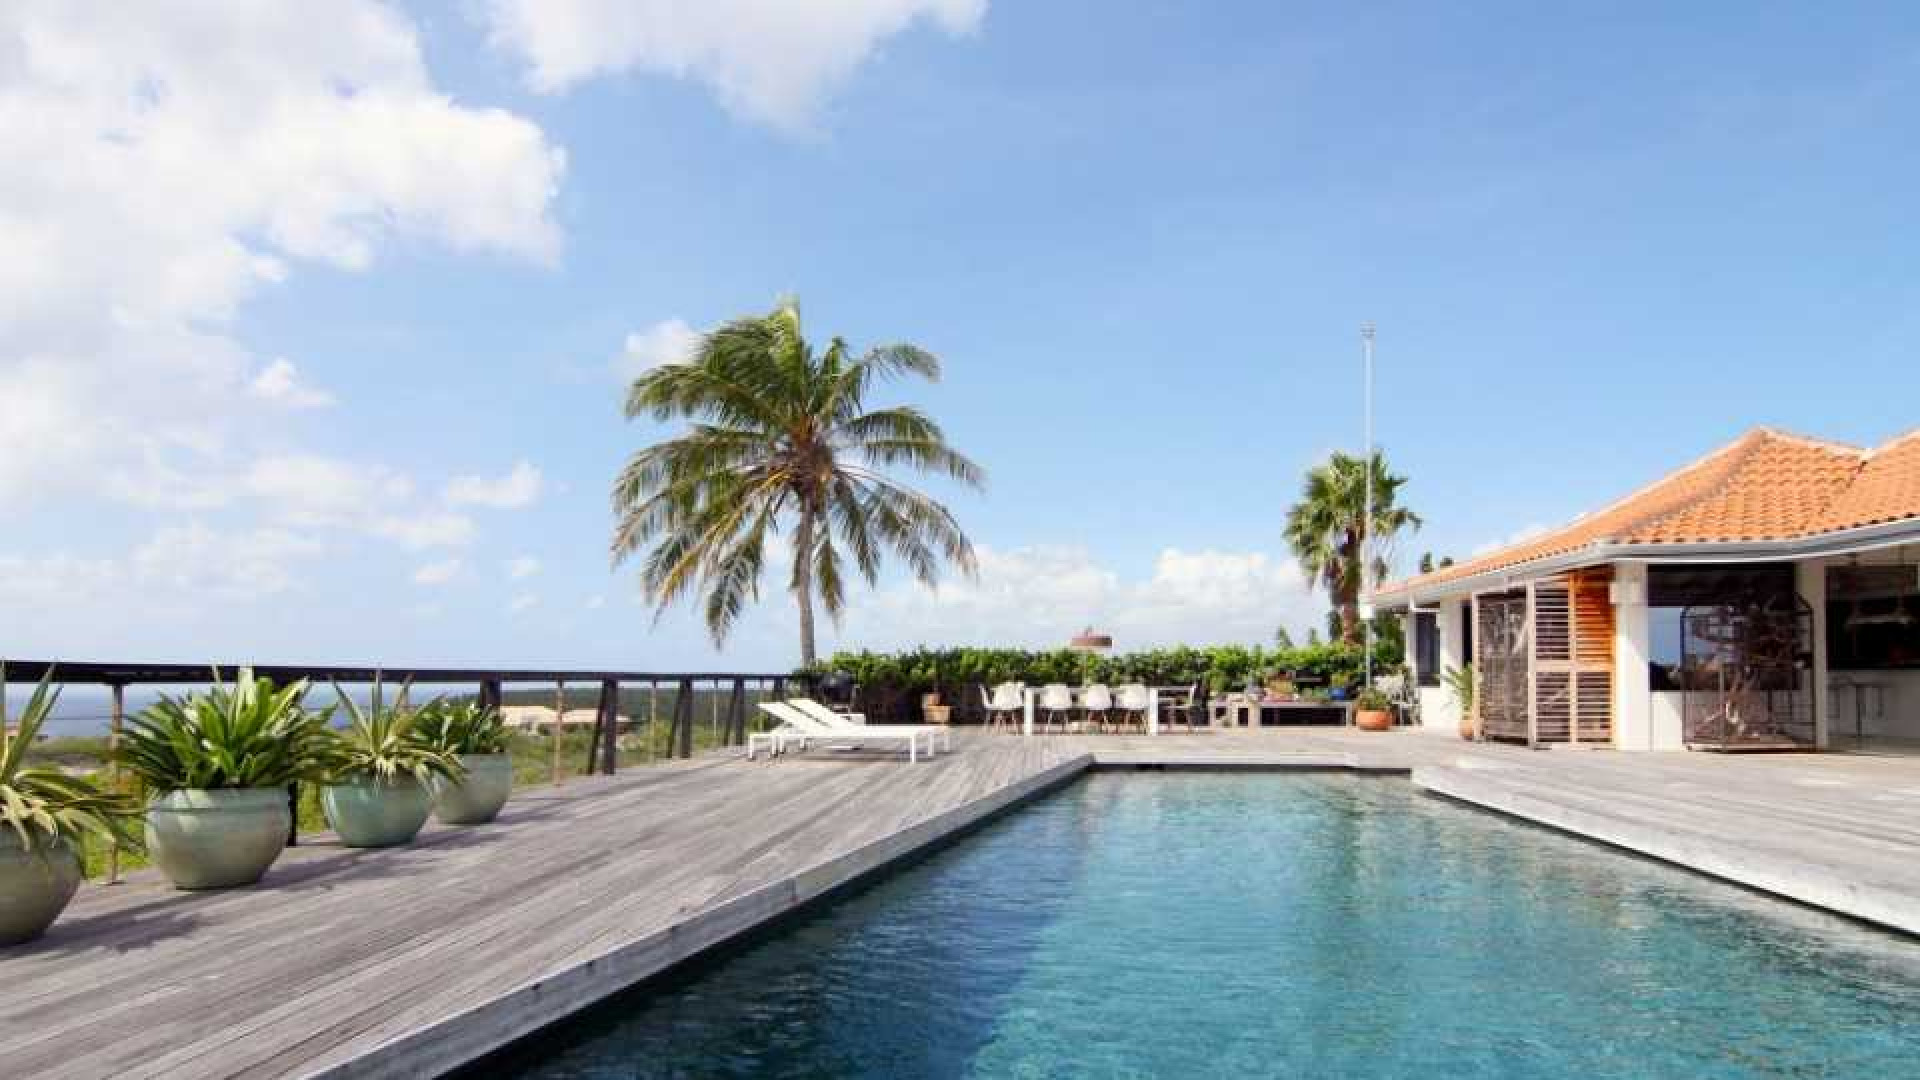 Barry Hay zet zijn miljoenenvilla op Curacao te koop. Zie foto's